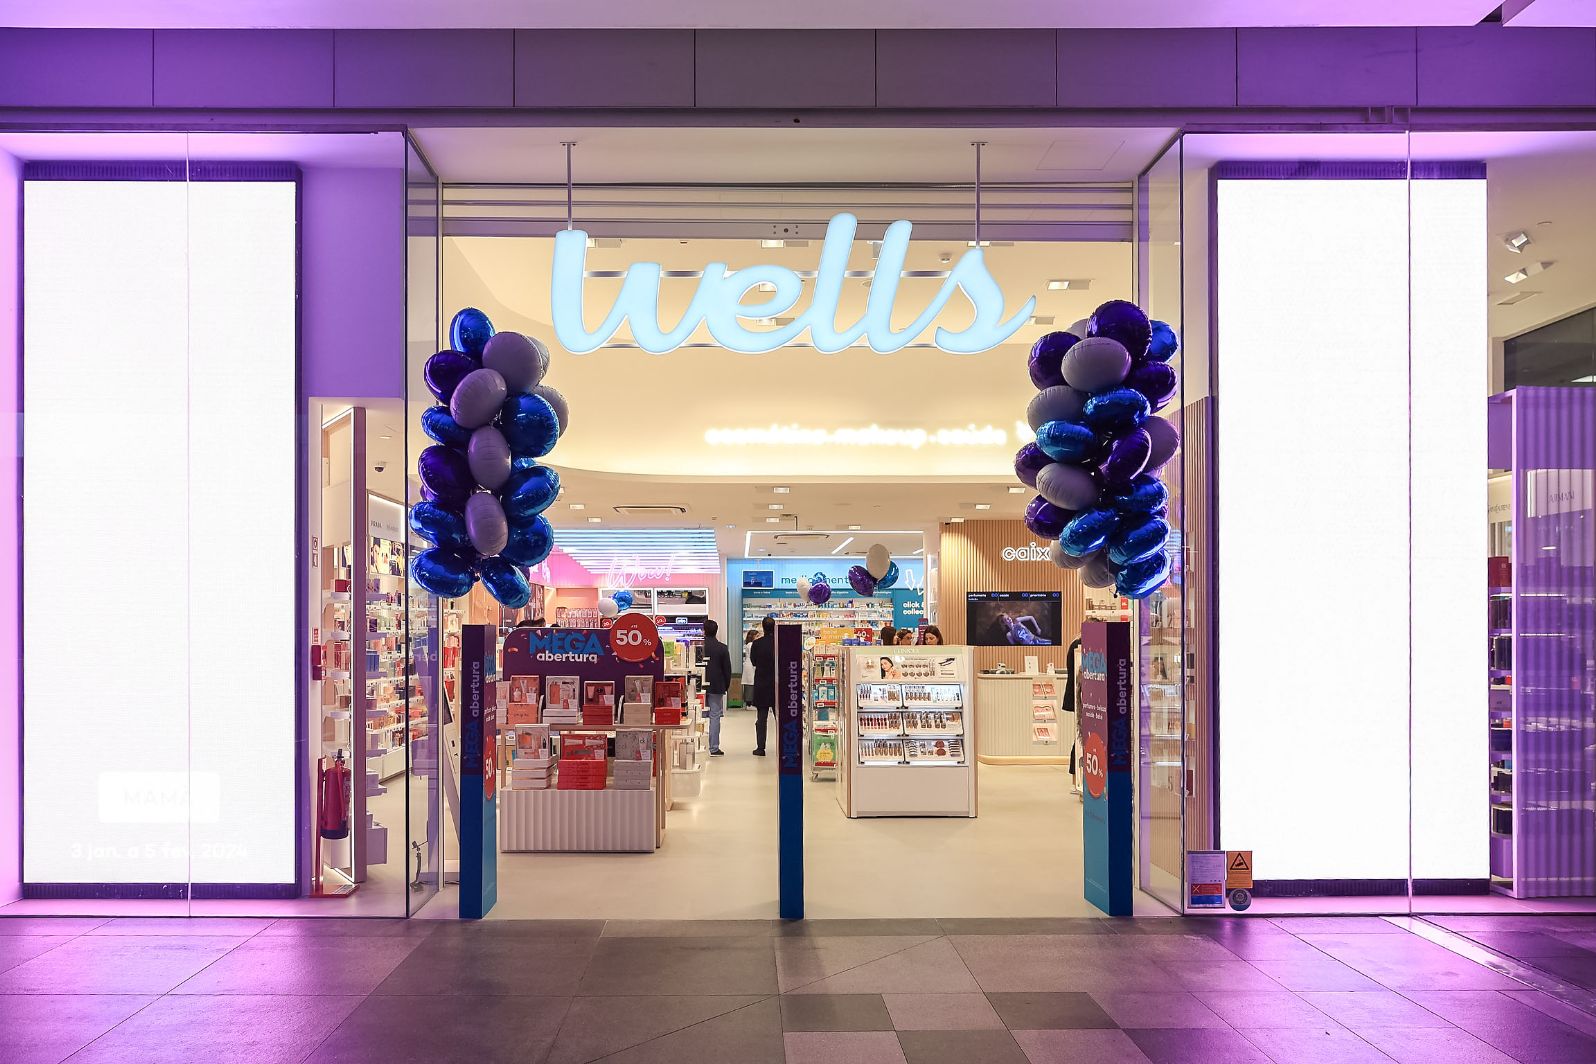 Wells abre nova loja no Aqua Portimão com conceito de perfumaria e beleza